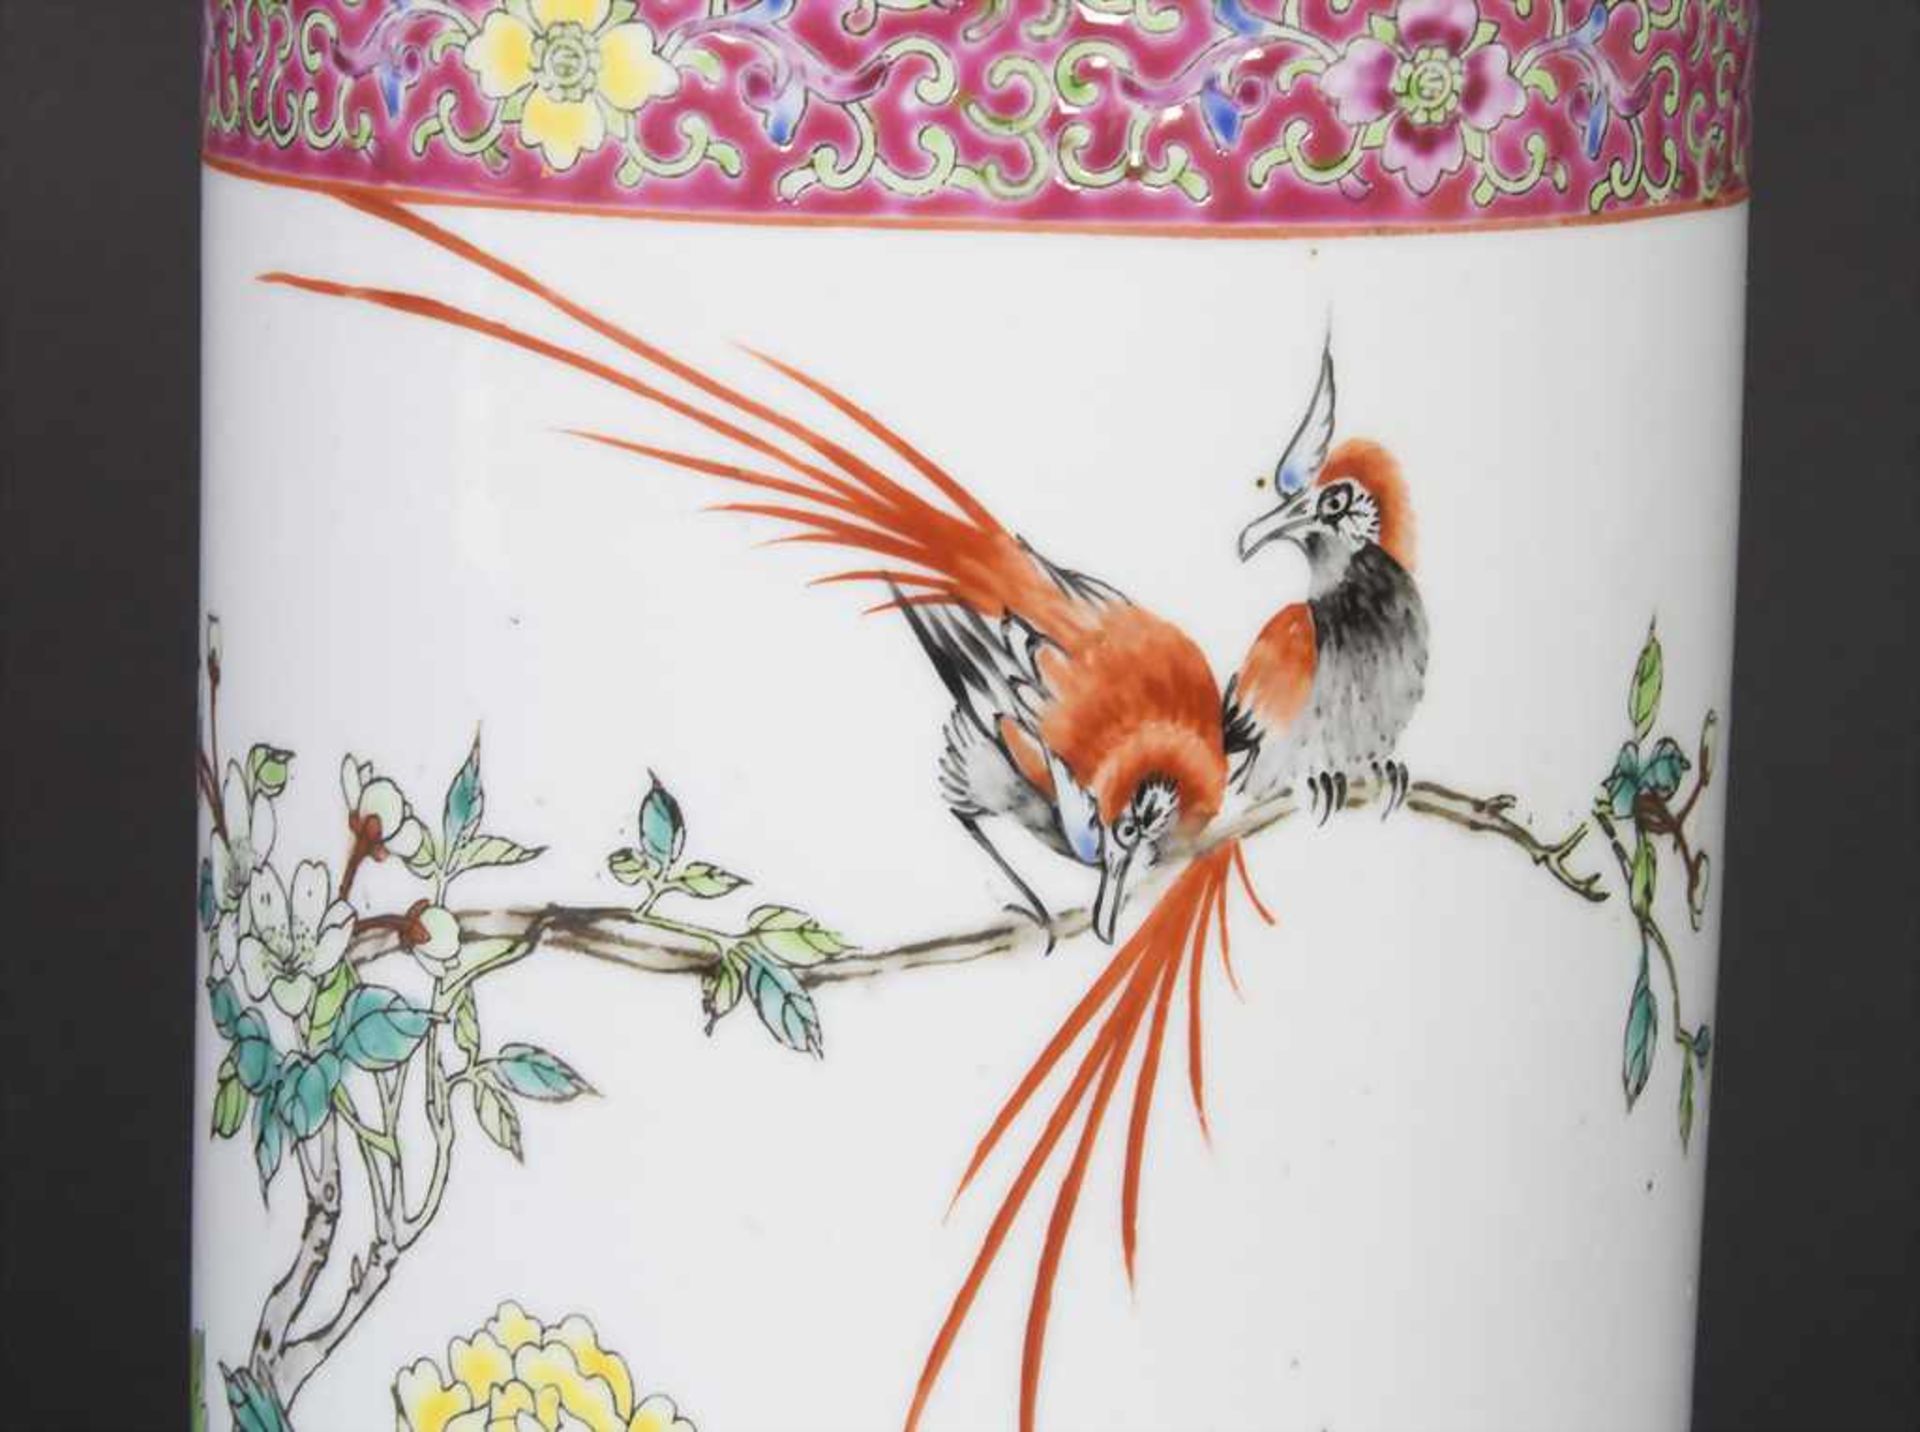 Porzellan-Vase / A Lidded Vase, China, 20. Jh.Material: Porzellan, mit polychromem Floraldekor, - Bild 9 aus 9